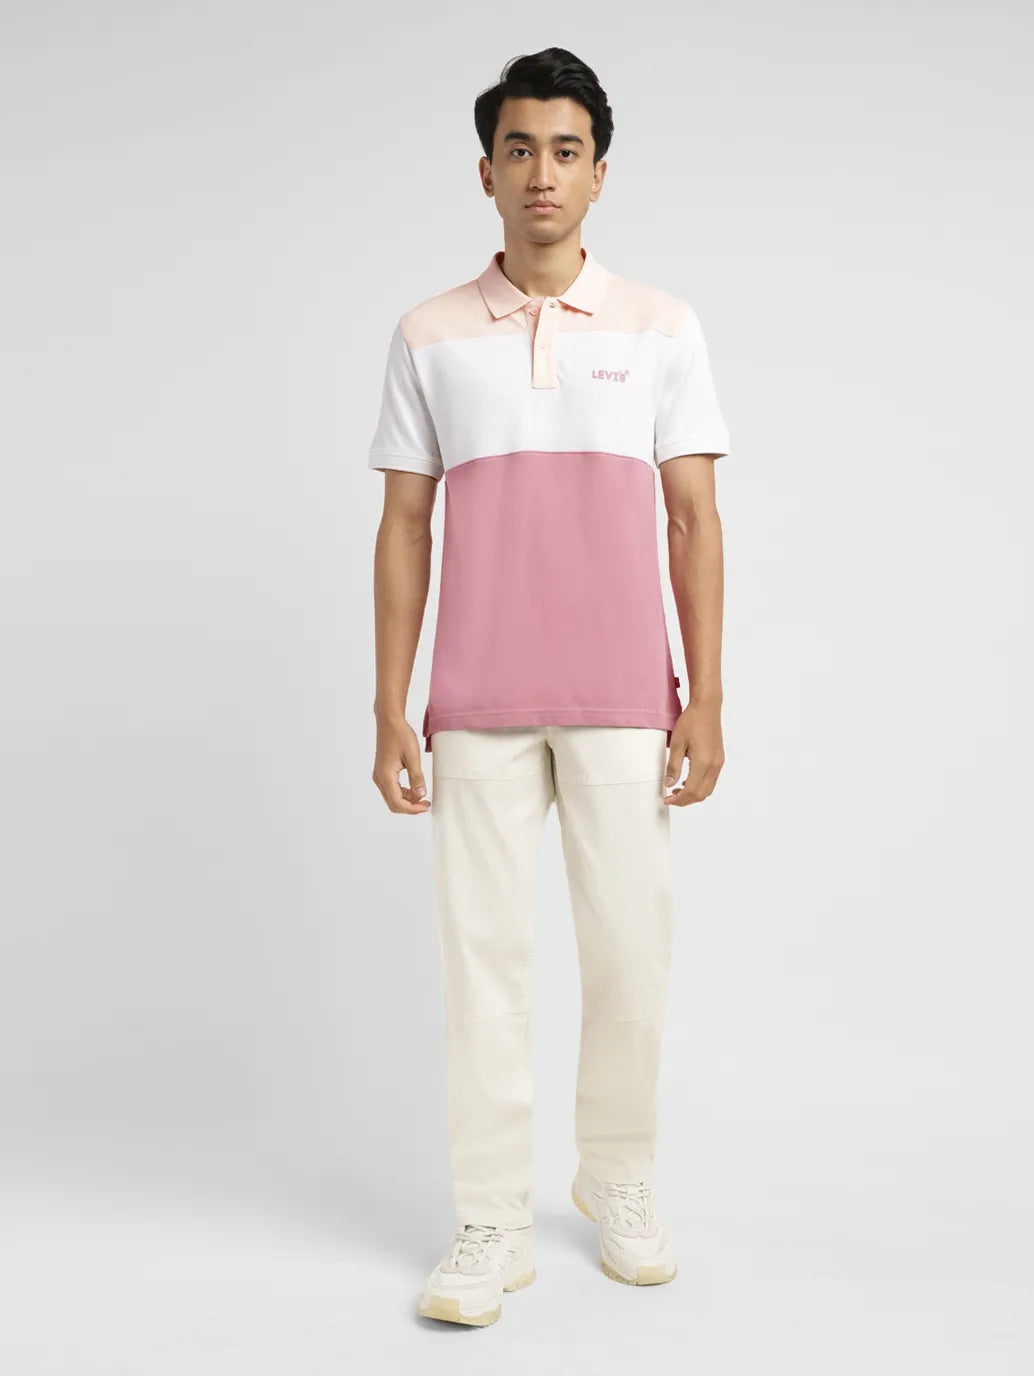 Men's Colorblock Slim Fit Polo T-shirt